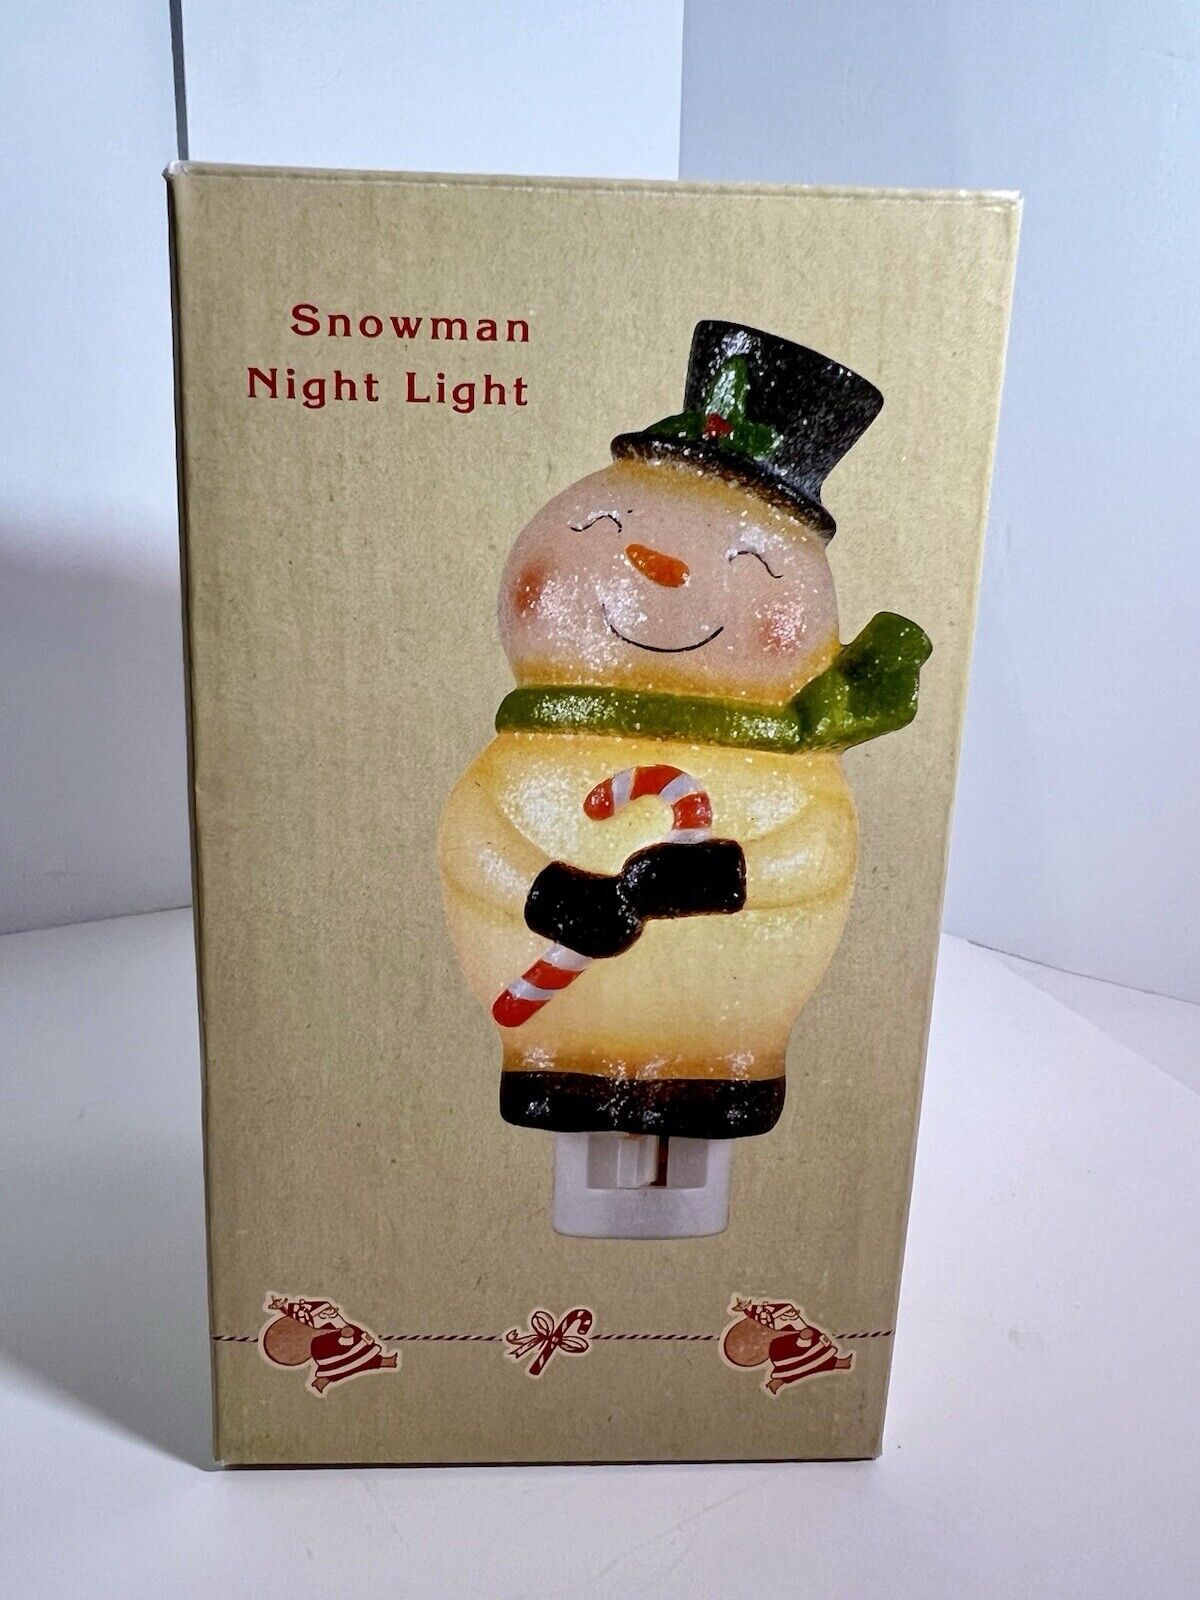 Cracker Barrel Christmas Light Up snowman Figurine